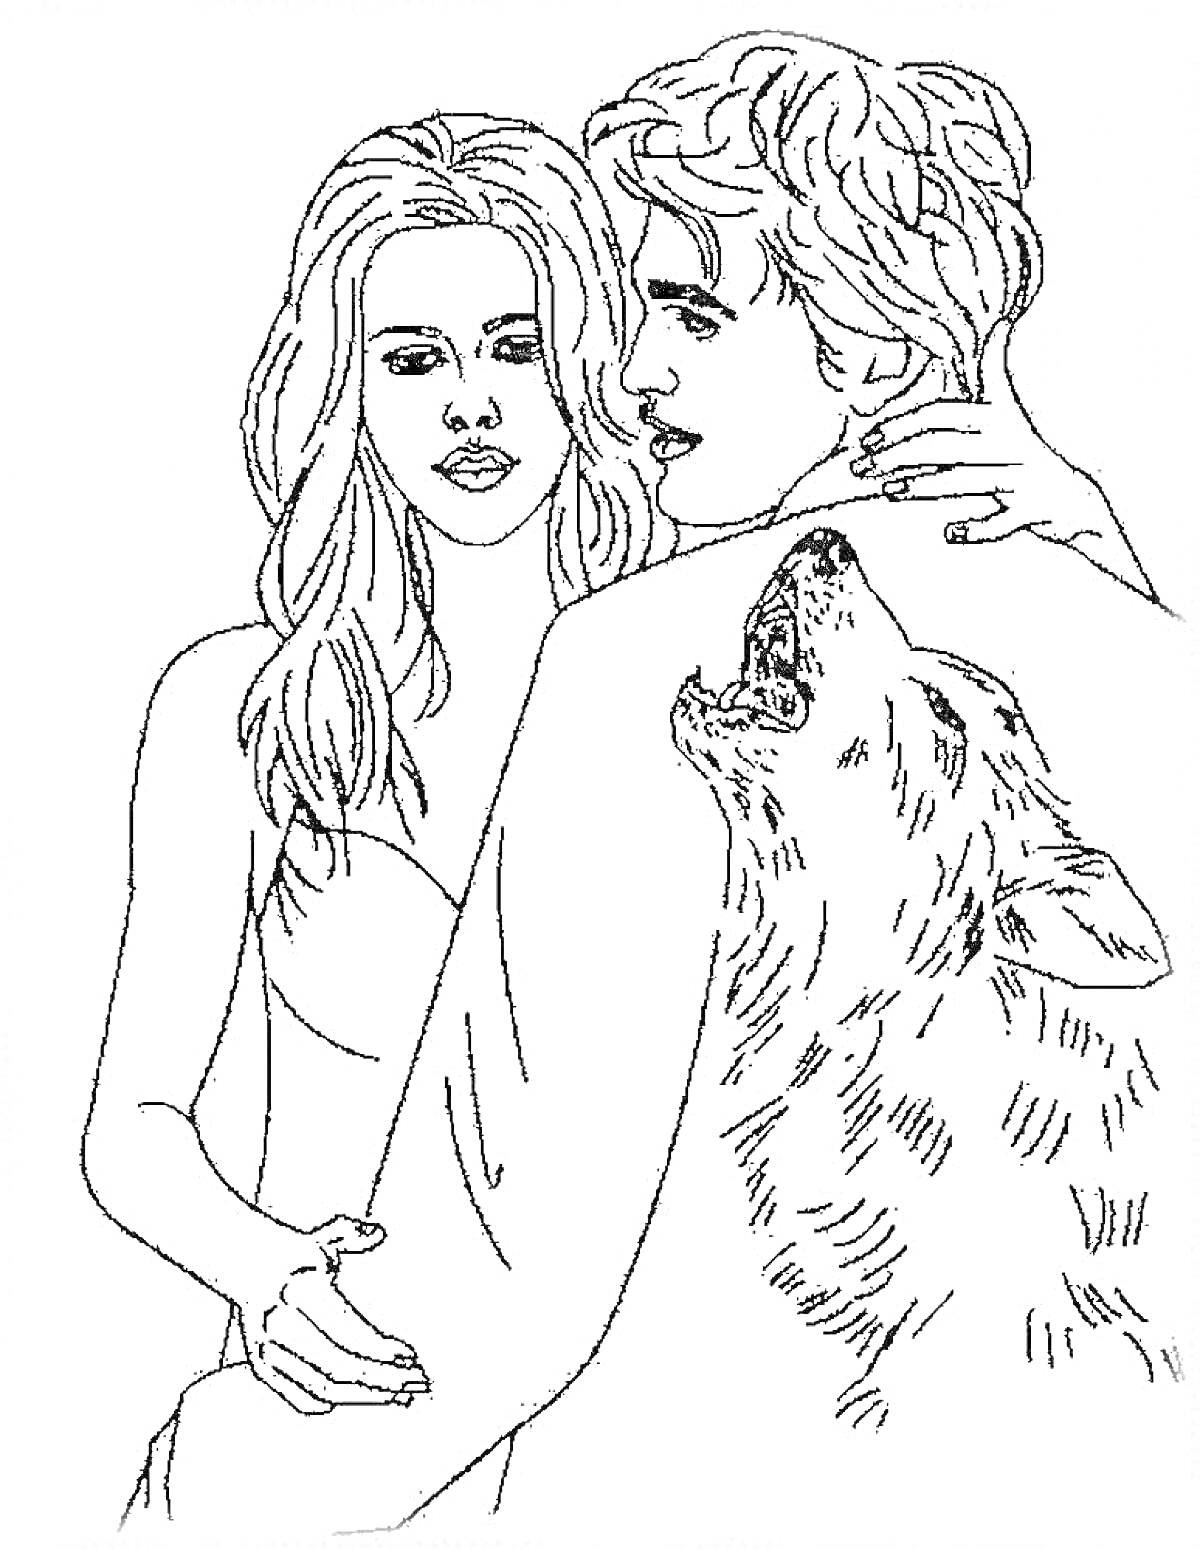 Двое людей обнимаются, мужчина с рисунком волка на спине